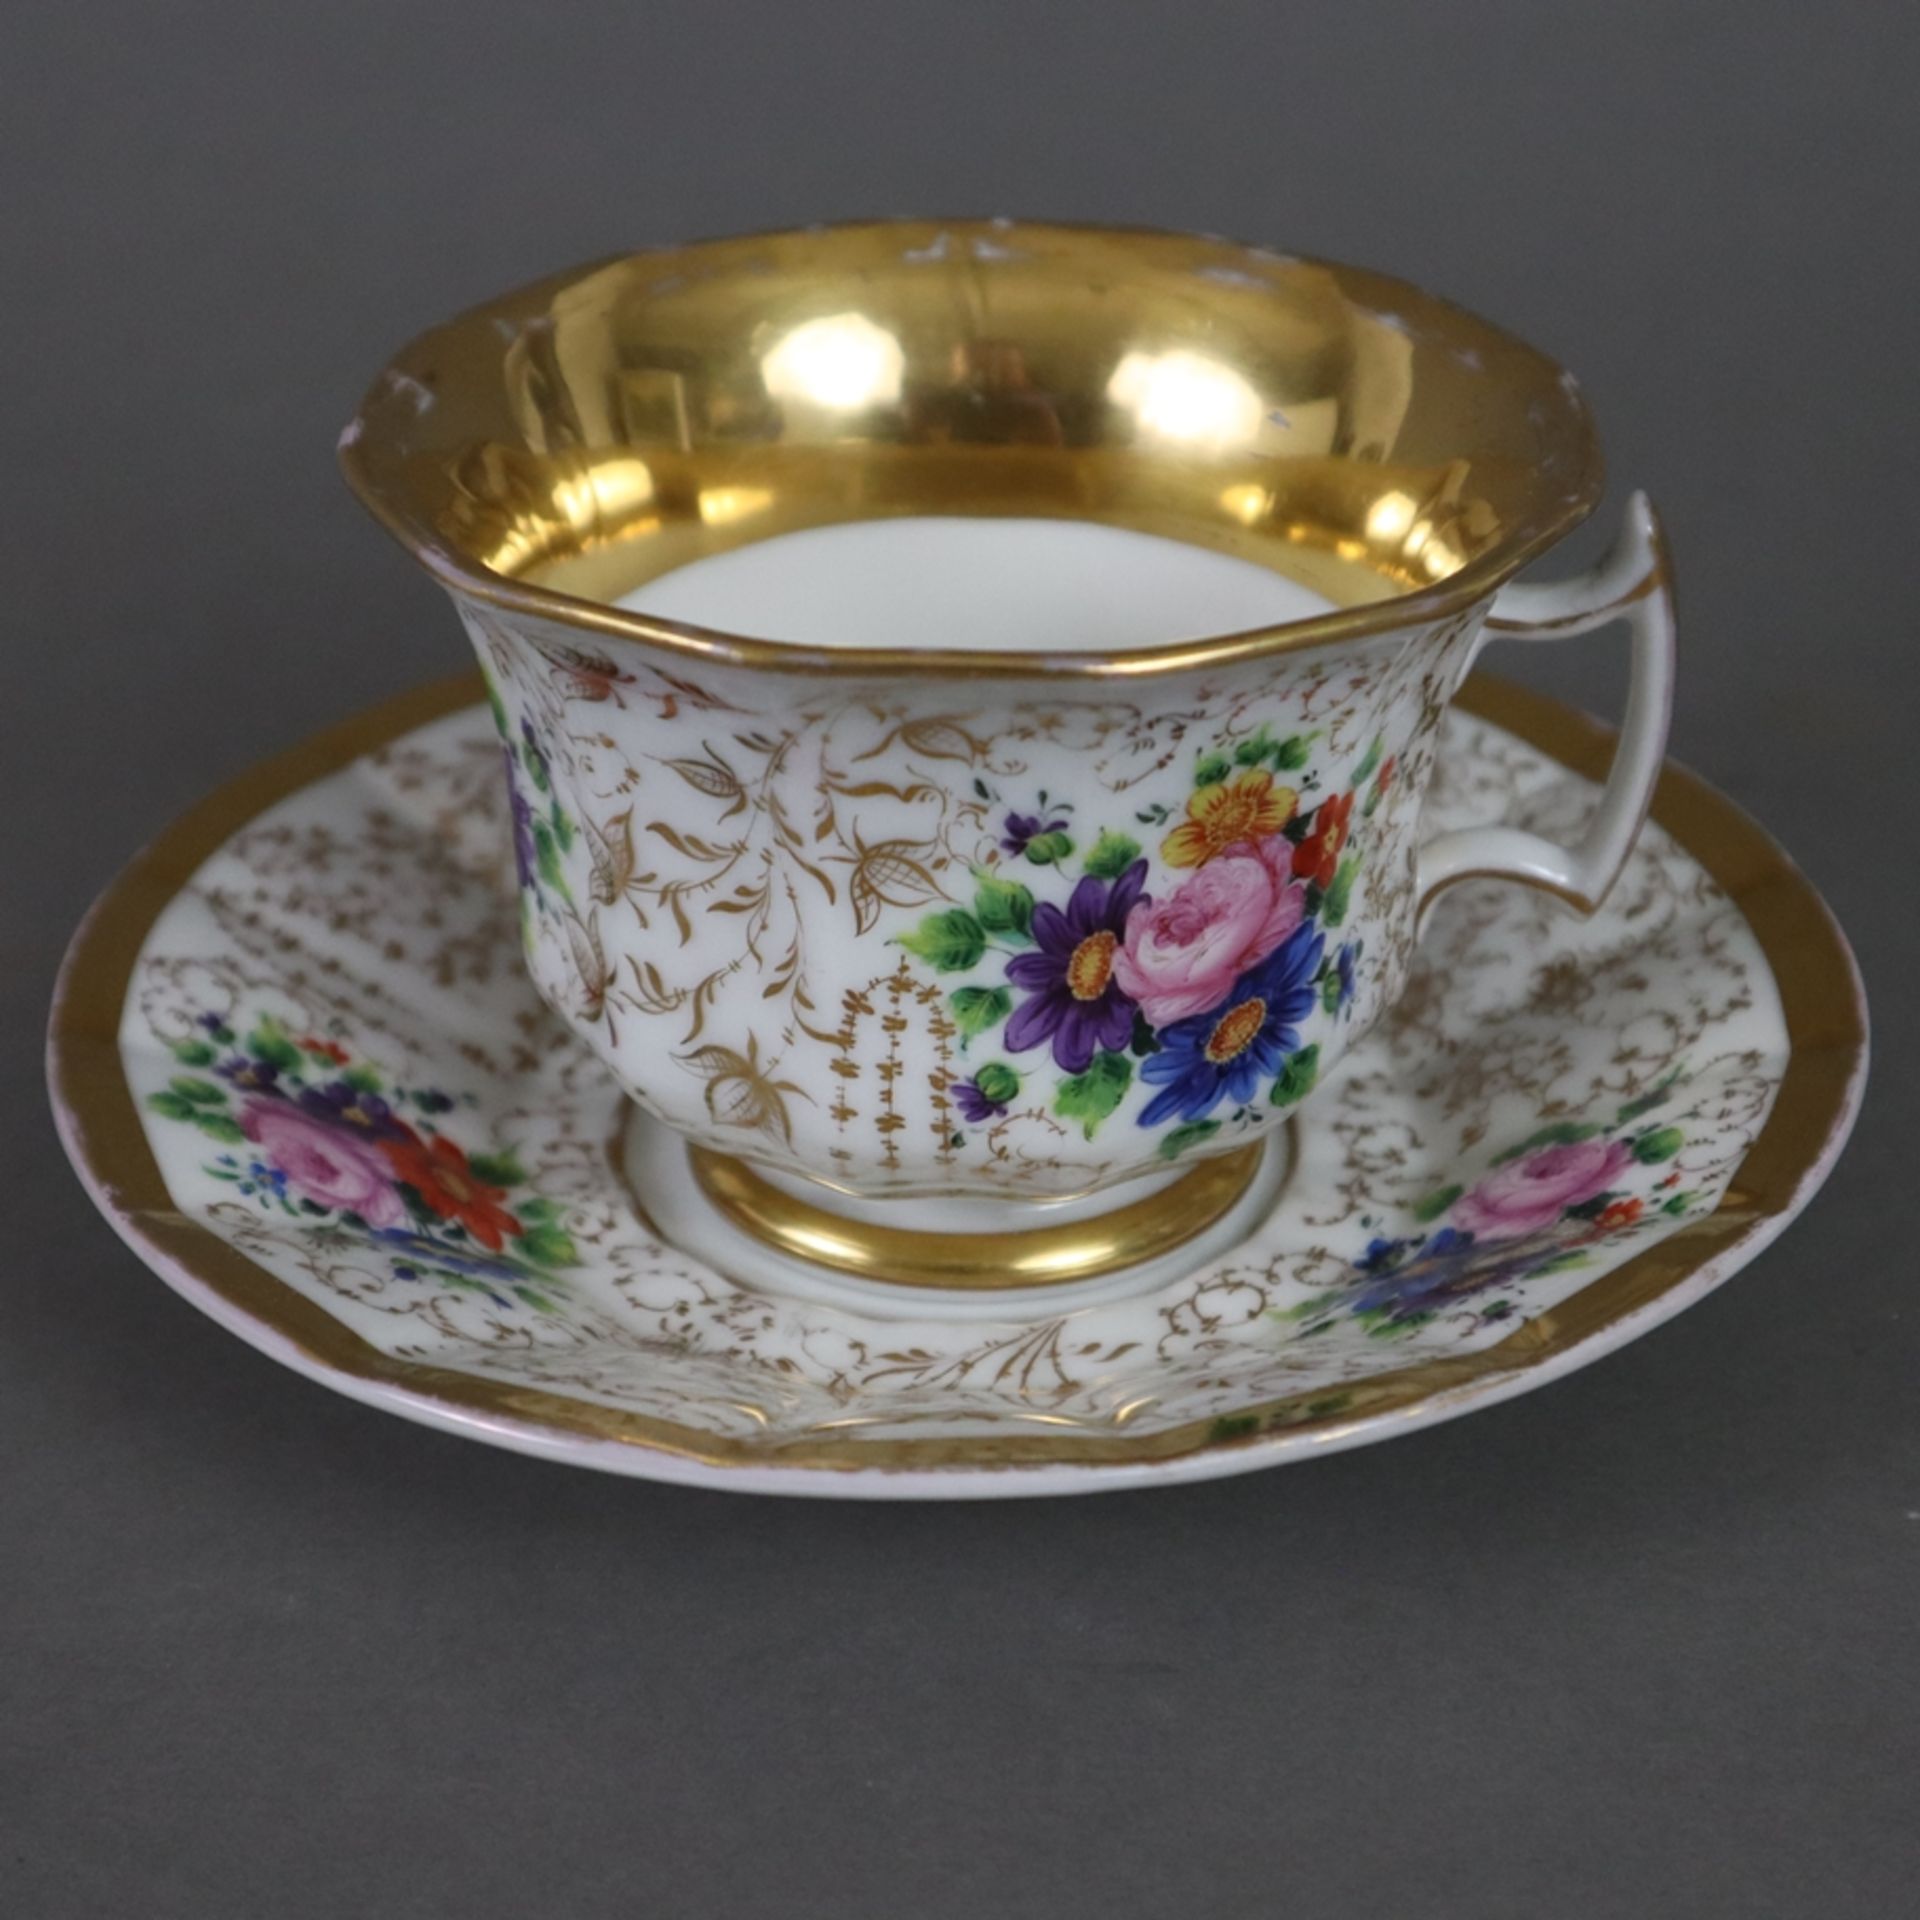 Zwei Tassen mit Untertassen - 19. Jh./um 1900, Porzellan, reicher Golddekor, 1x große Tasse mit pol - Bild 2 aus 7